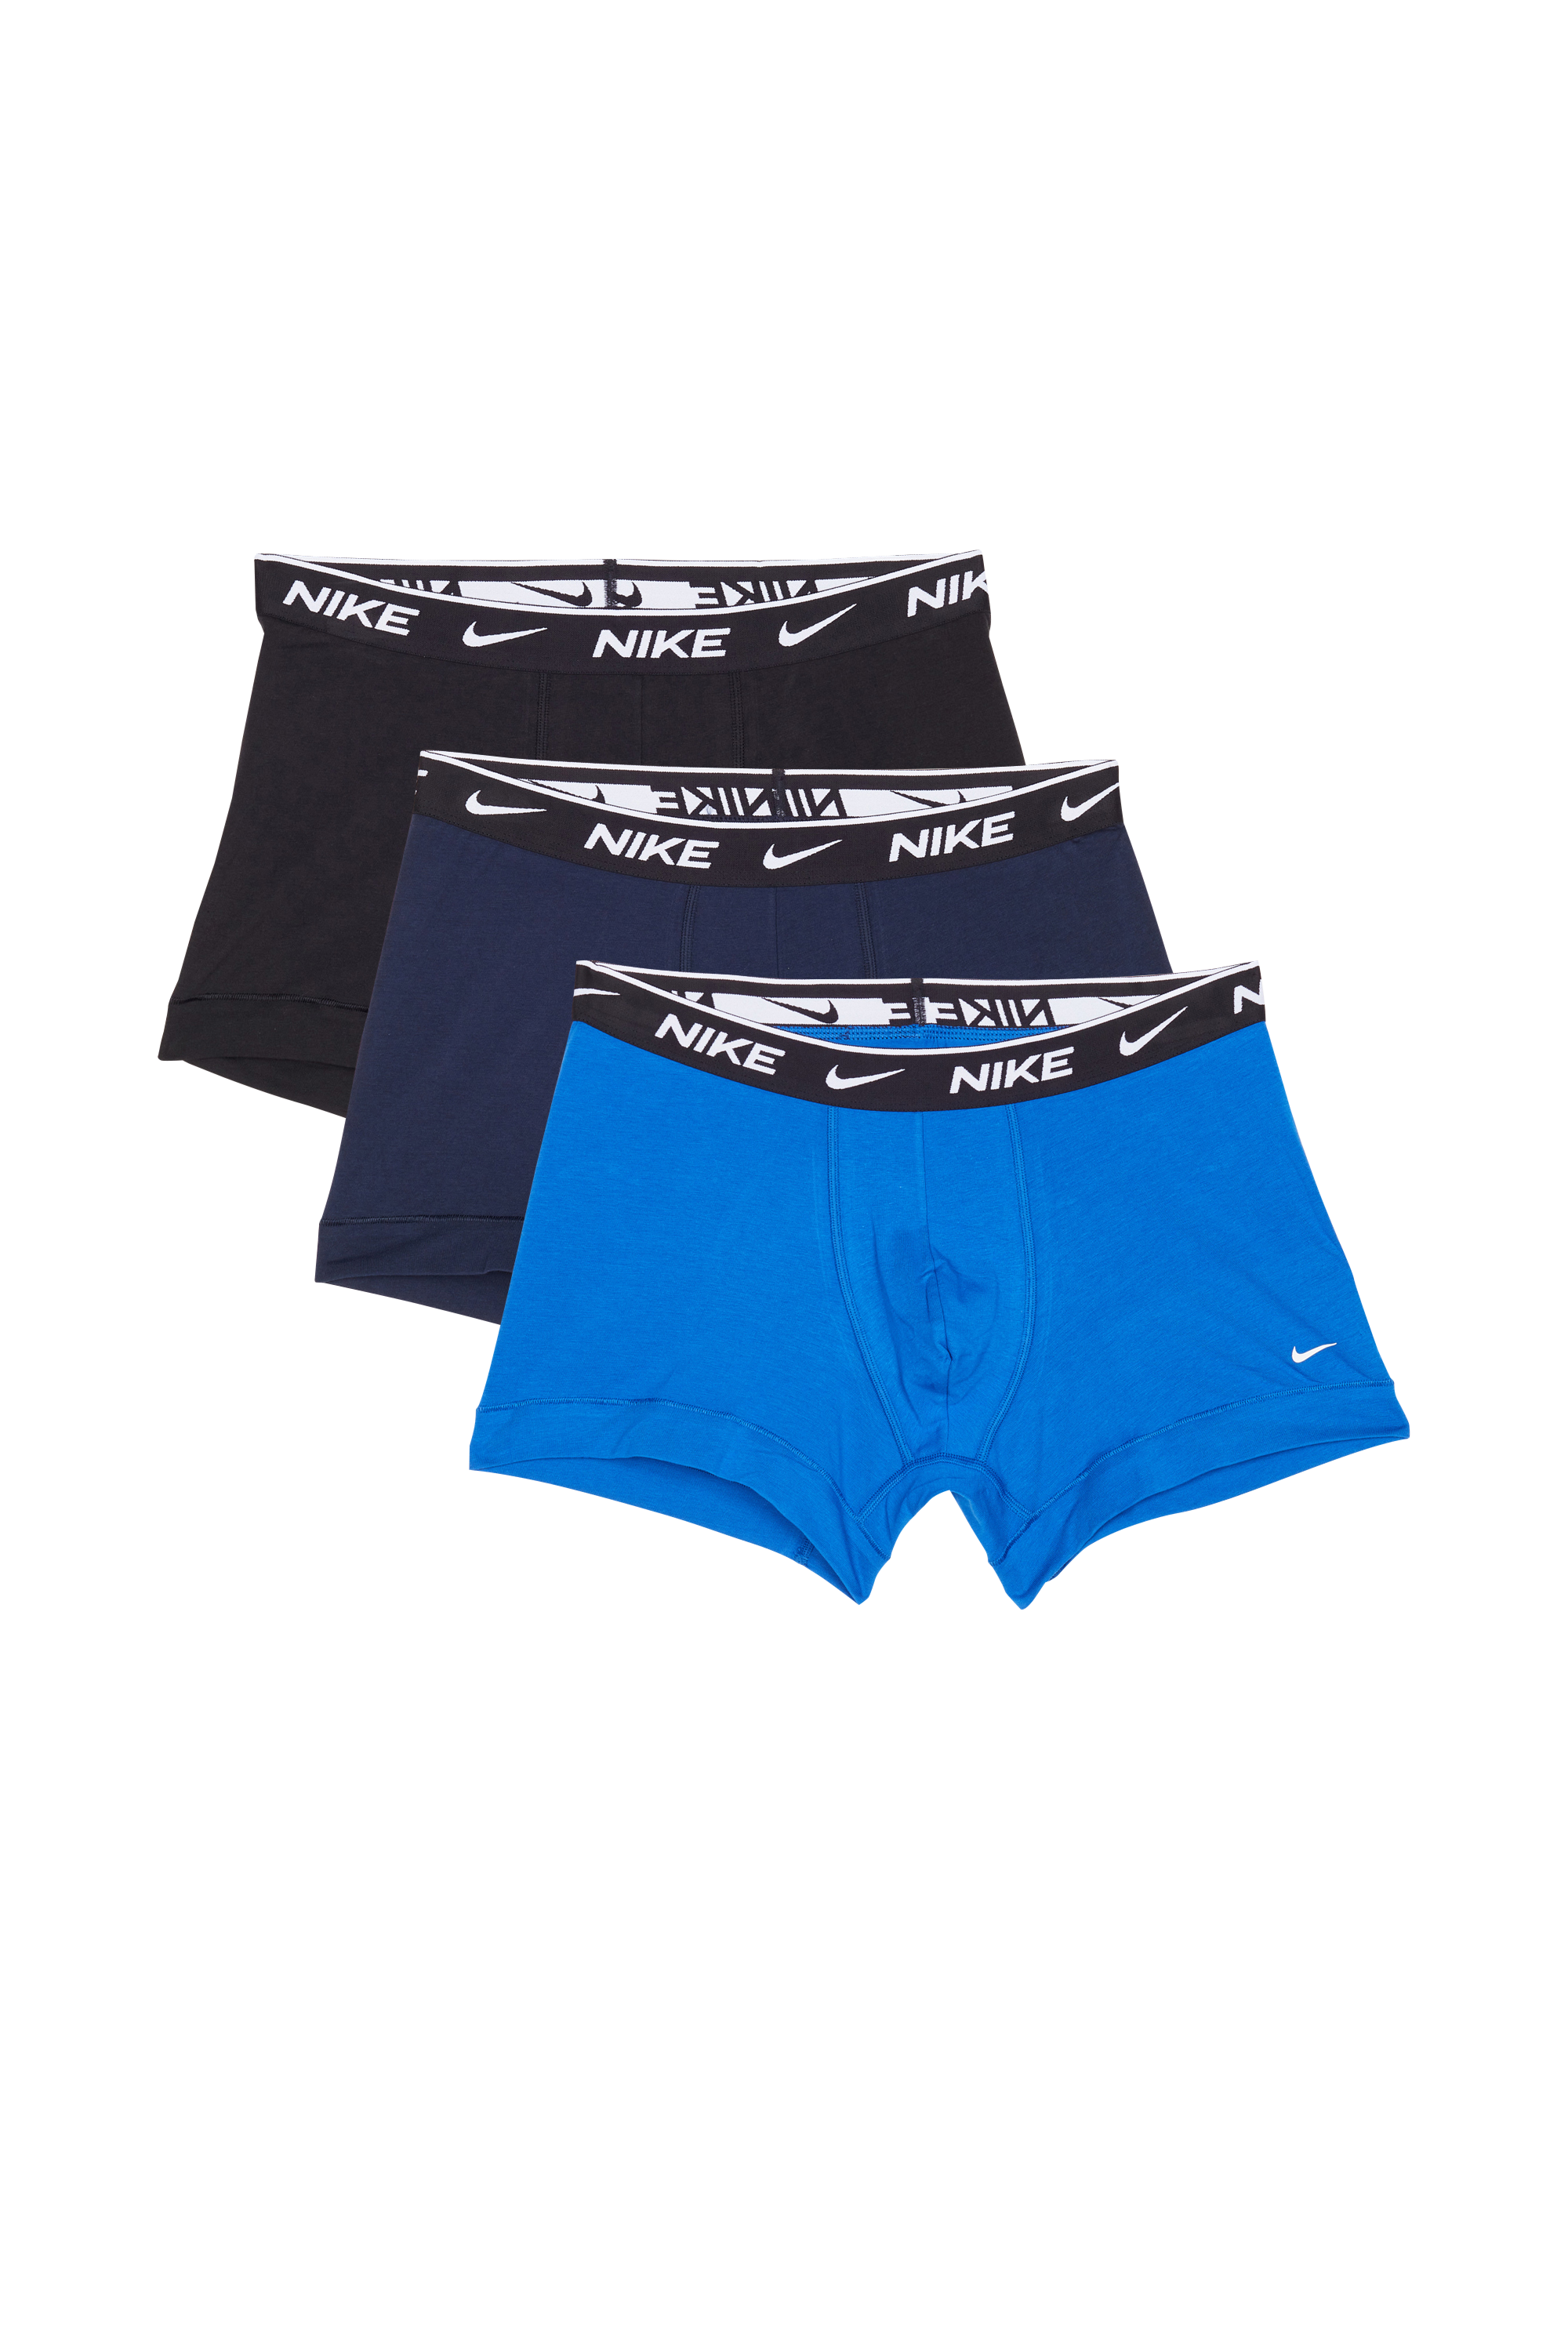 Nike Underwear - Lot de 3 boxers - Taille XS